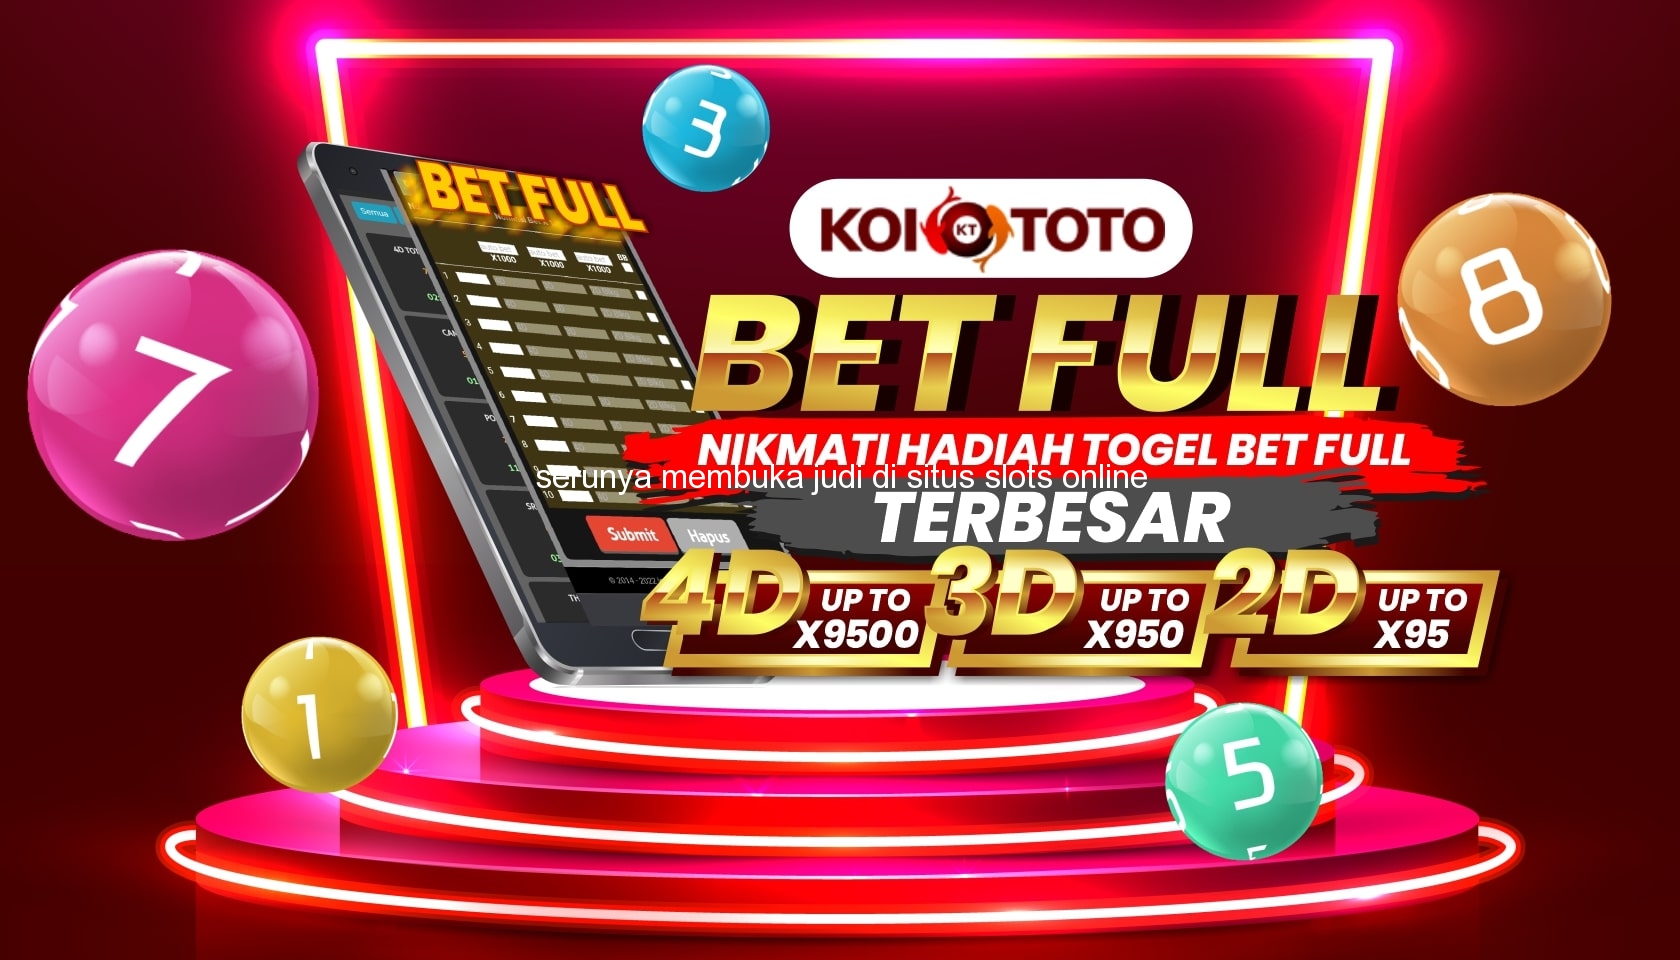 Serunya Membuka Judi di Situs Slots Online Terbaik di Bulango Selatan – KOITOTO